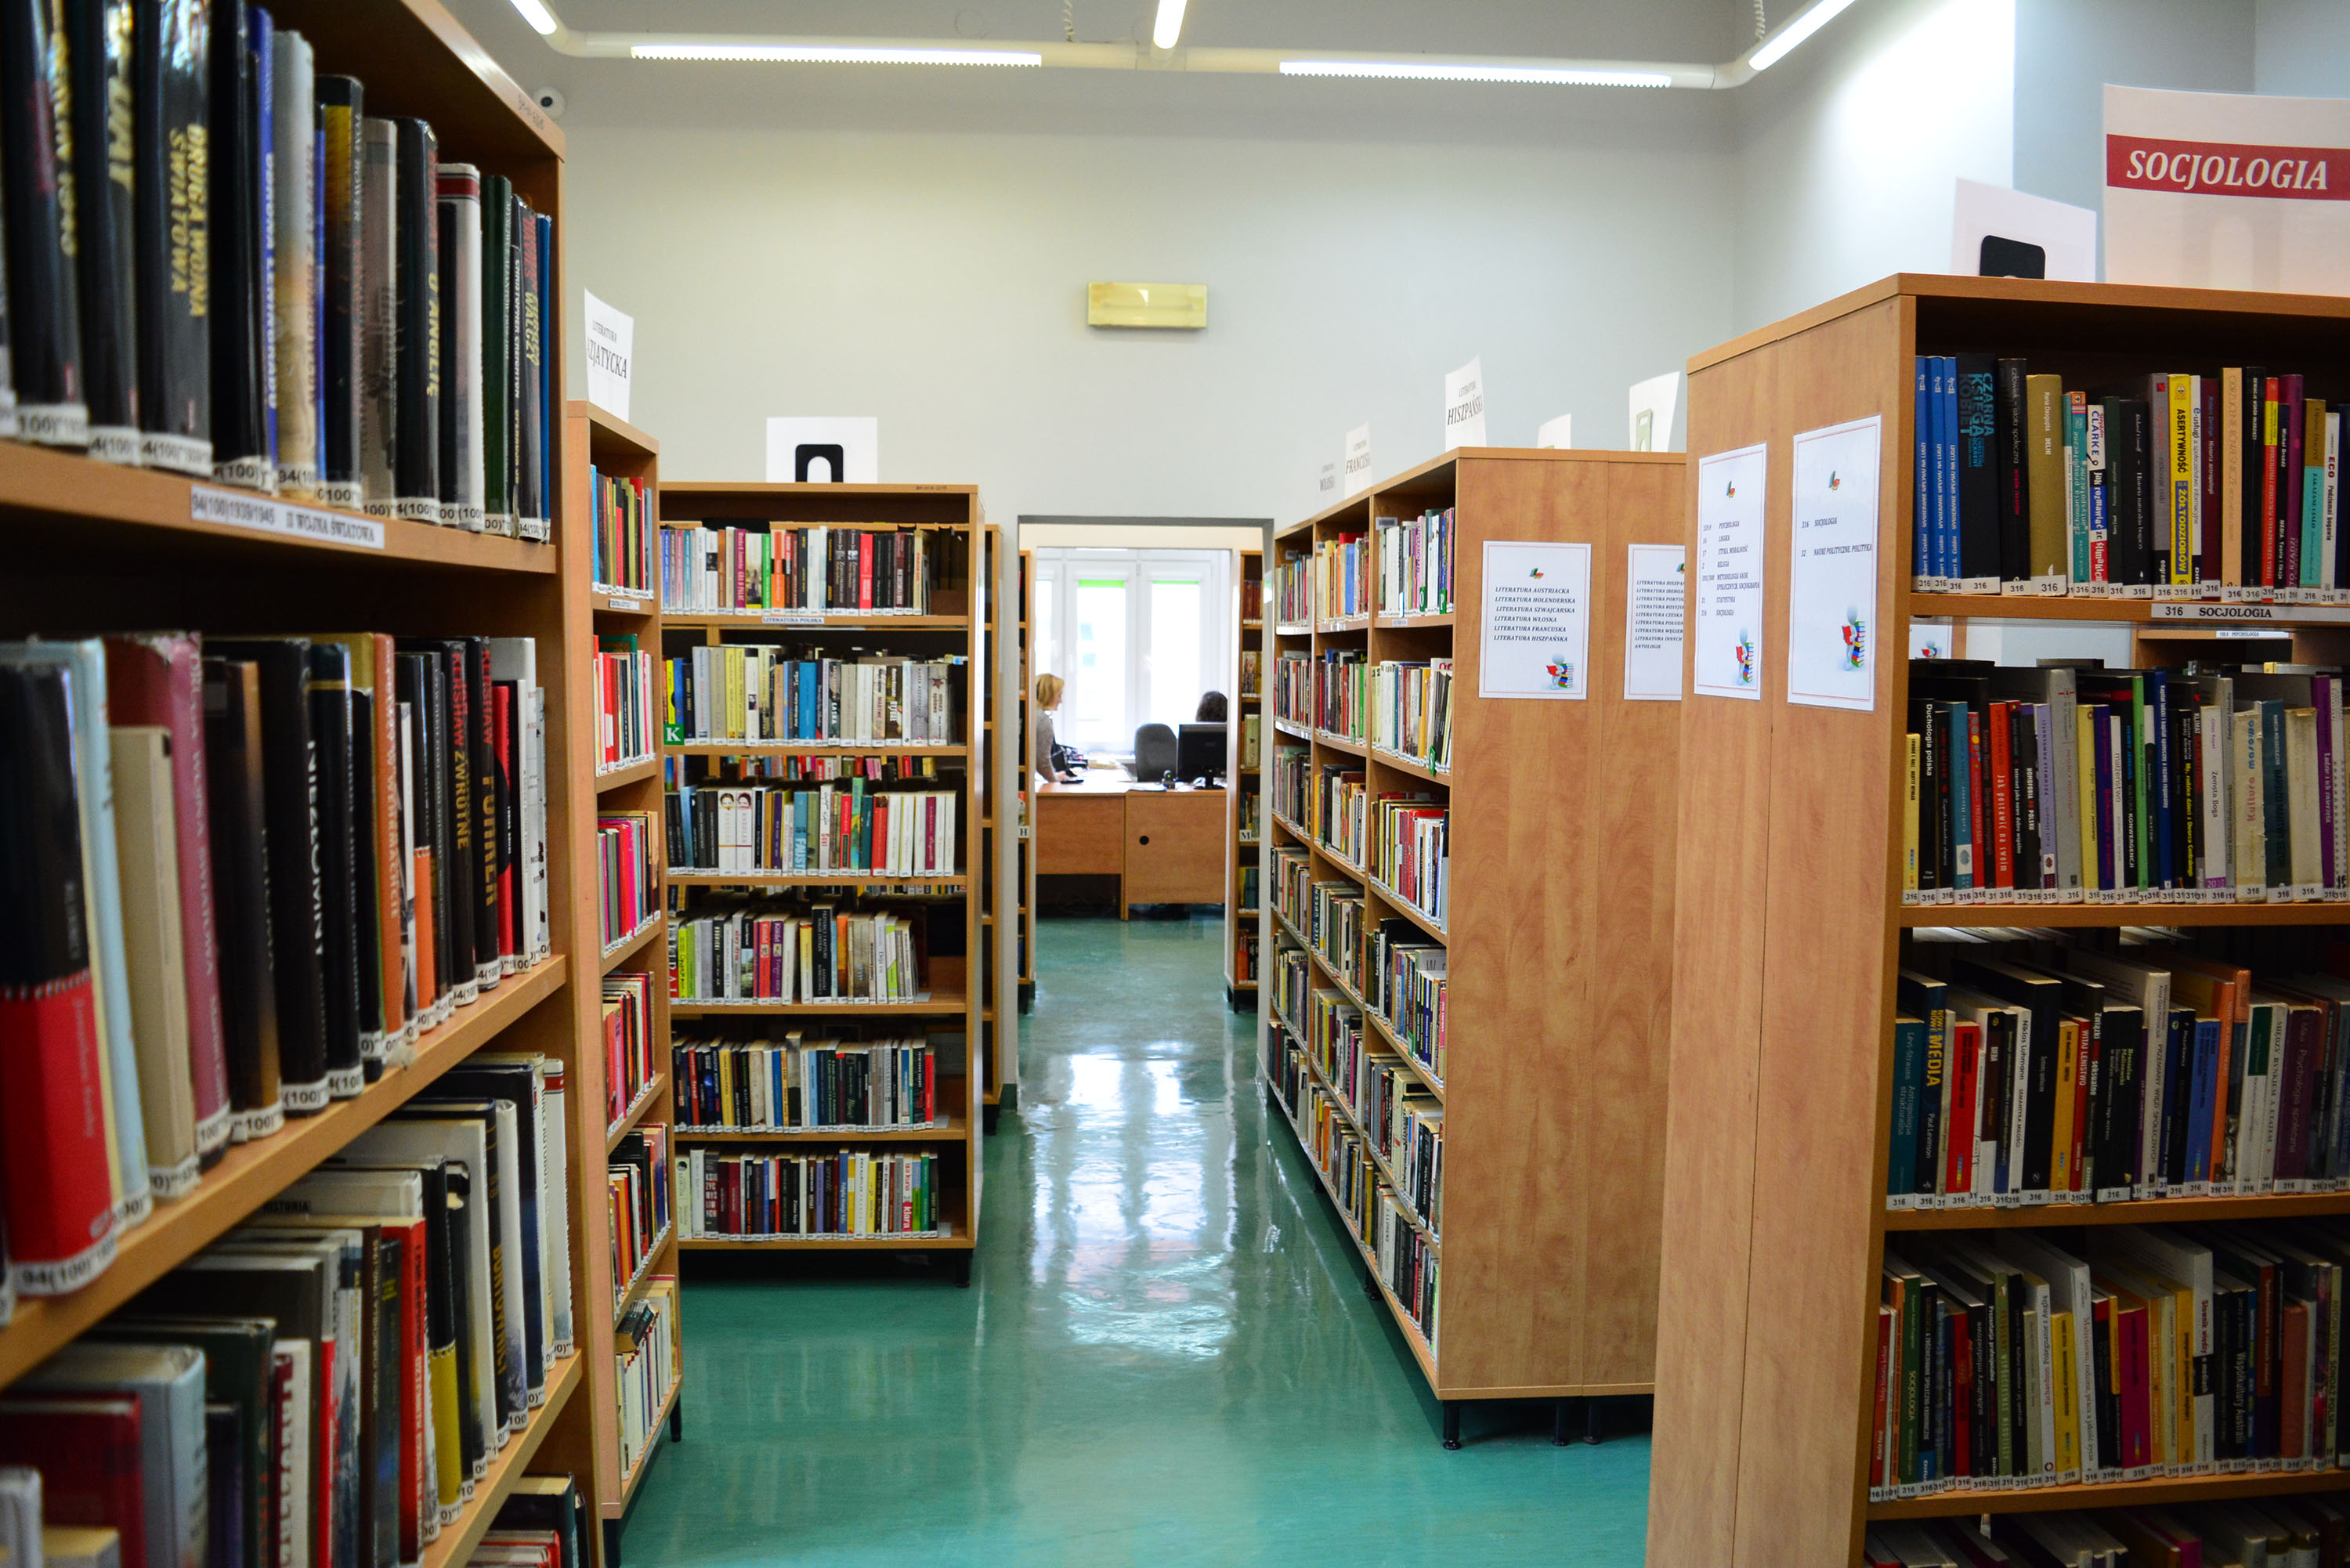 Municipal Public Library in Gliwice, Branch No. 1